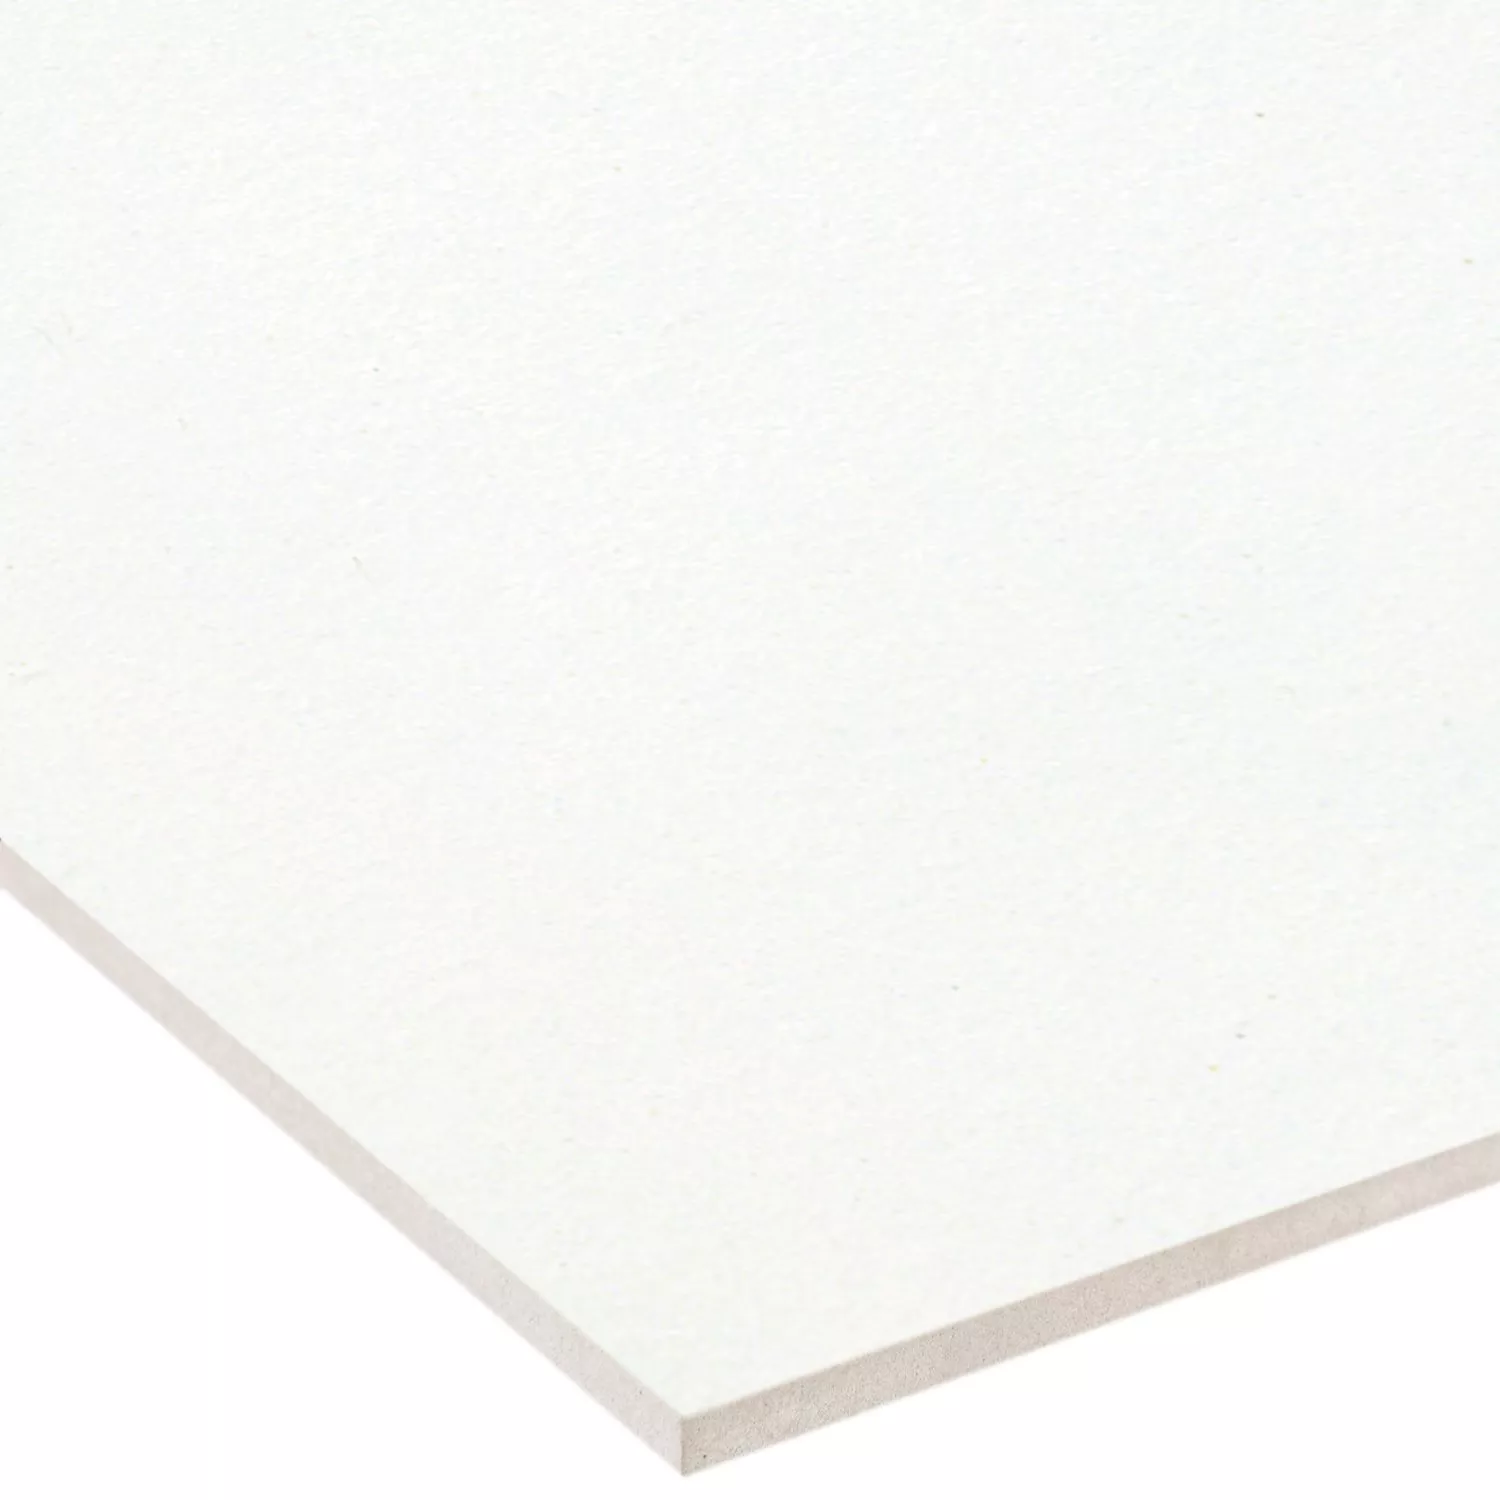 Sample Floor Tiles Adventure White Mat 10x20cm